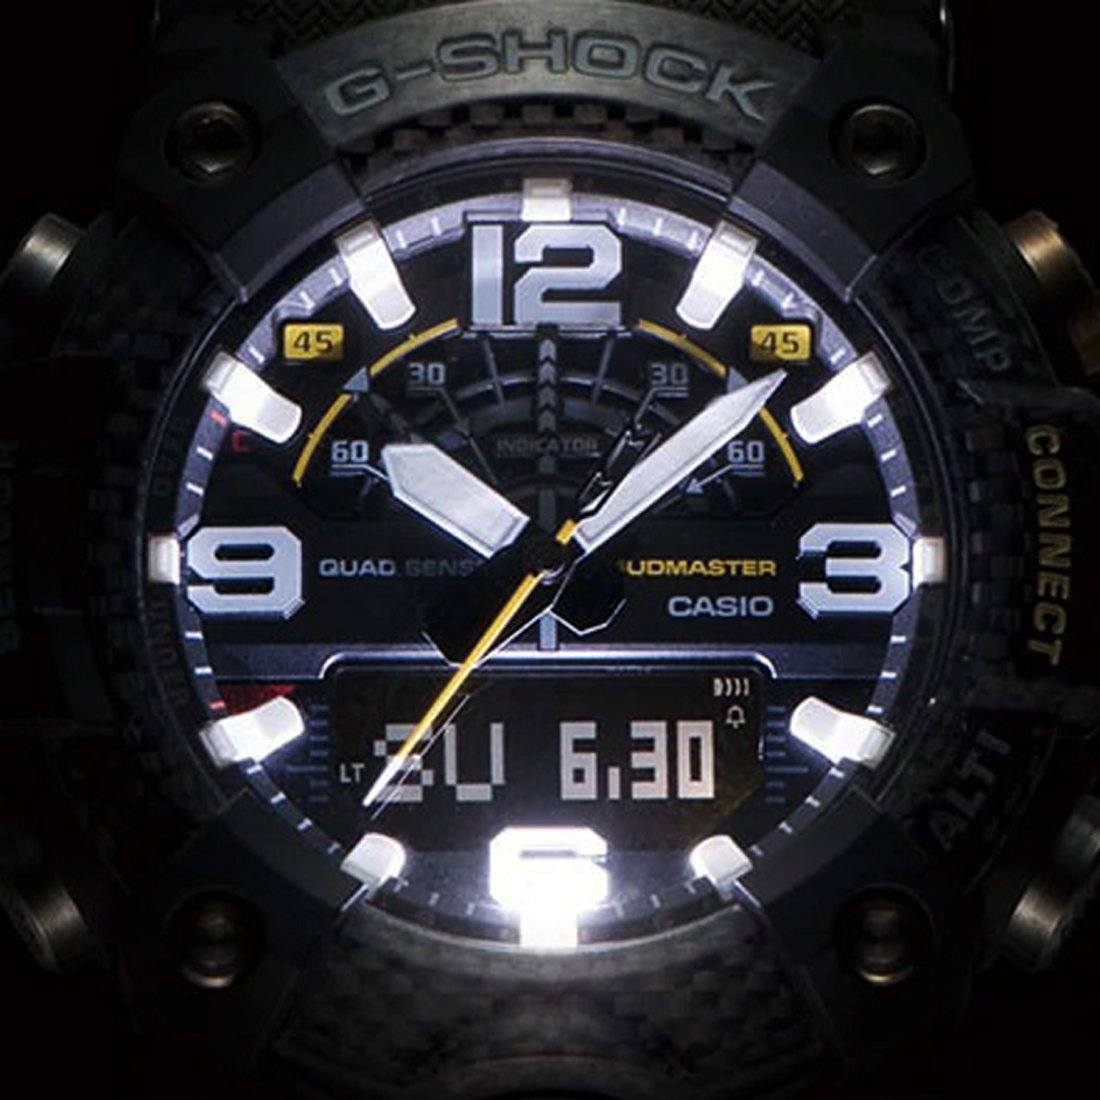 Casio G-Shock Master of G Mudmaster Digital Analogue Black/Green Watch GG-B100-1A3 Watches Casio 